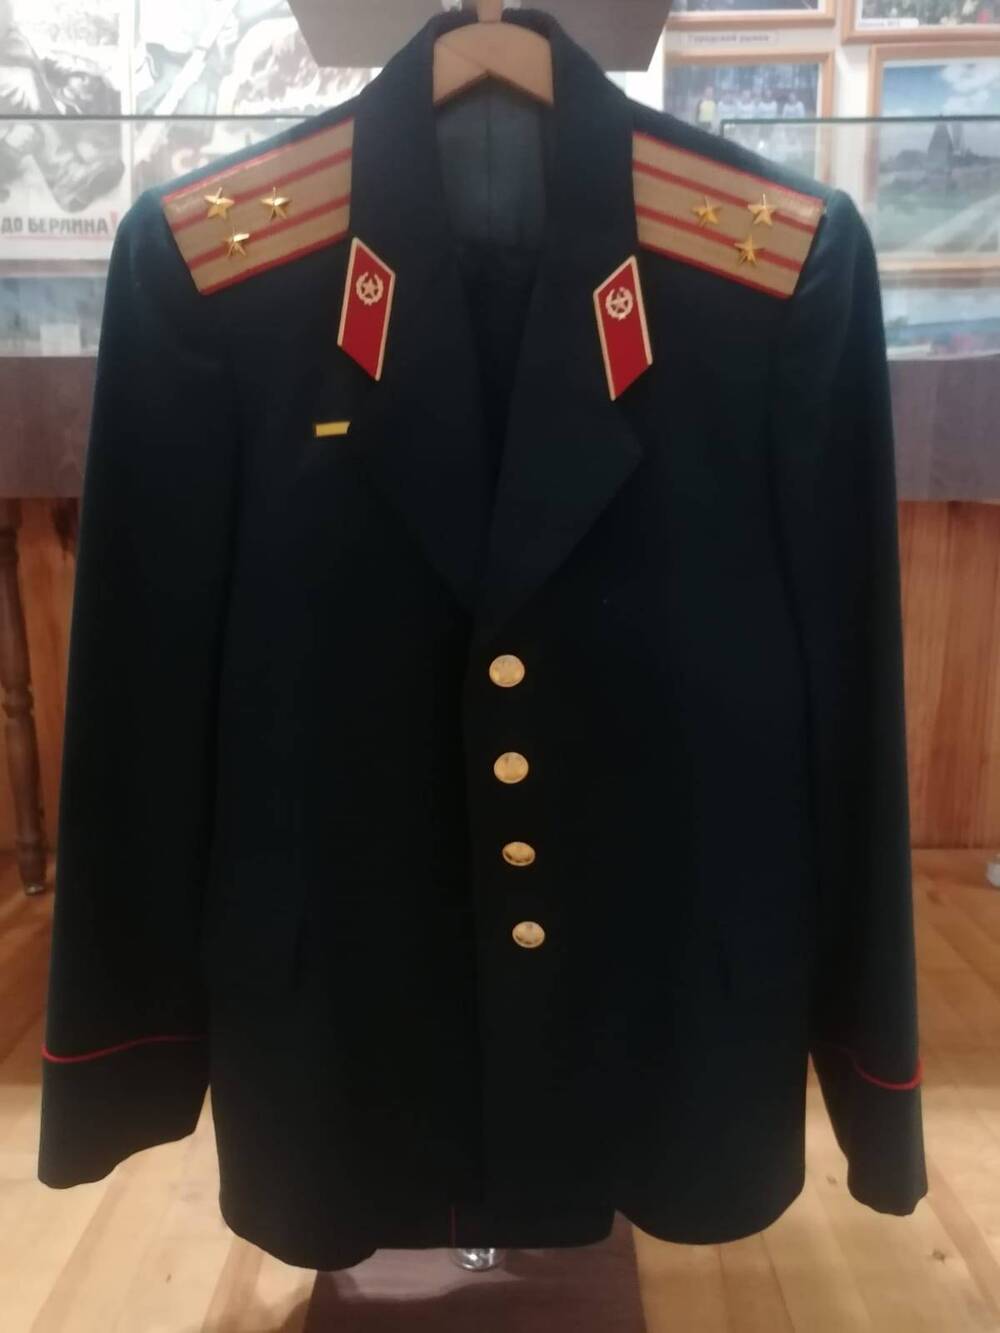 Военный китель, офицерский с погонами, полковника Кузьмина Ивана Григорьевича